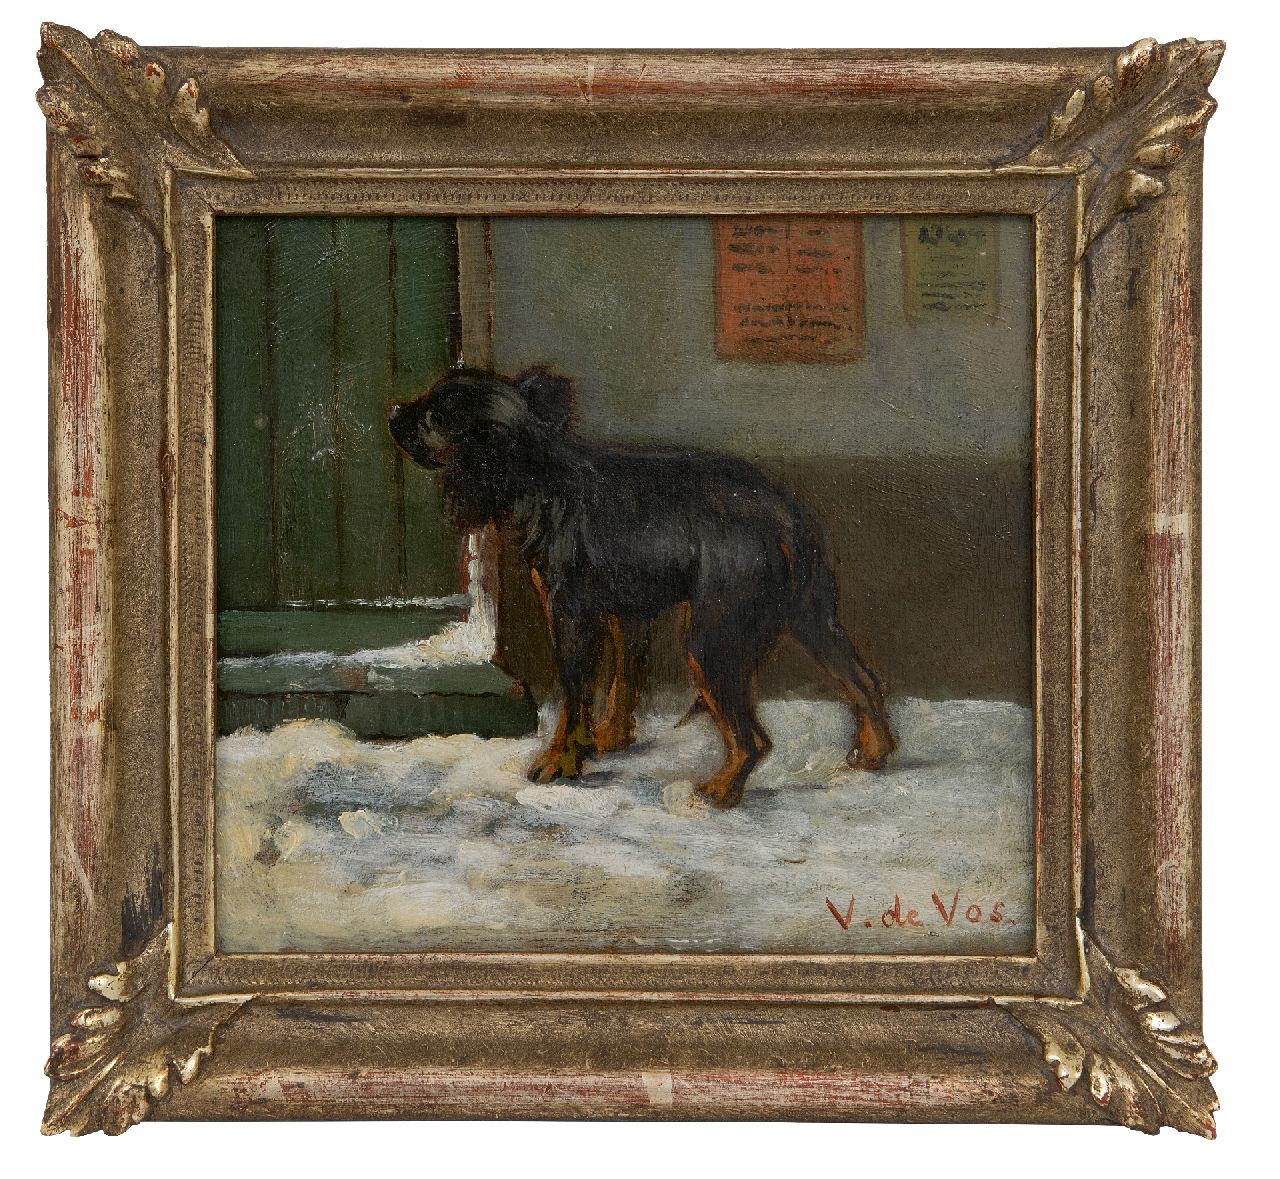 Vos V. de | Vincent de Vos | Schilderijen te koop aangeboden | Op de bestemming aangekomen, olieverf op doek 15,6 x 17,1 cm, gesigneerd rechtsonder